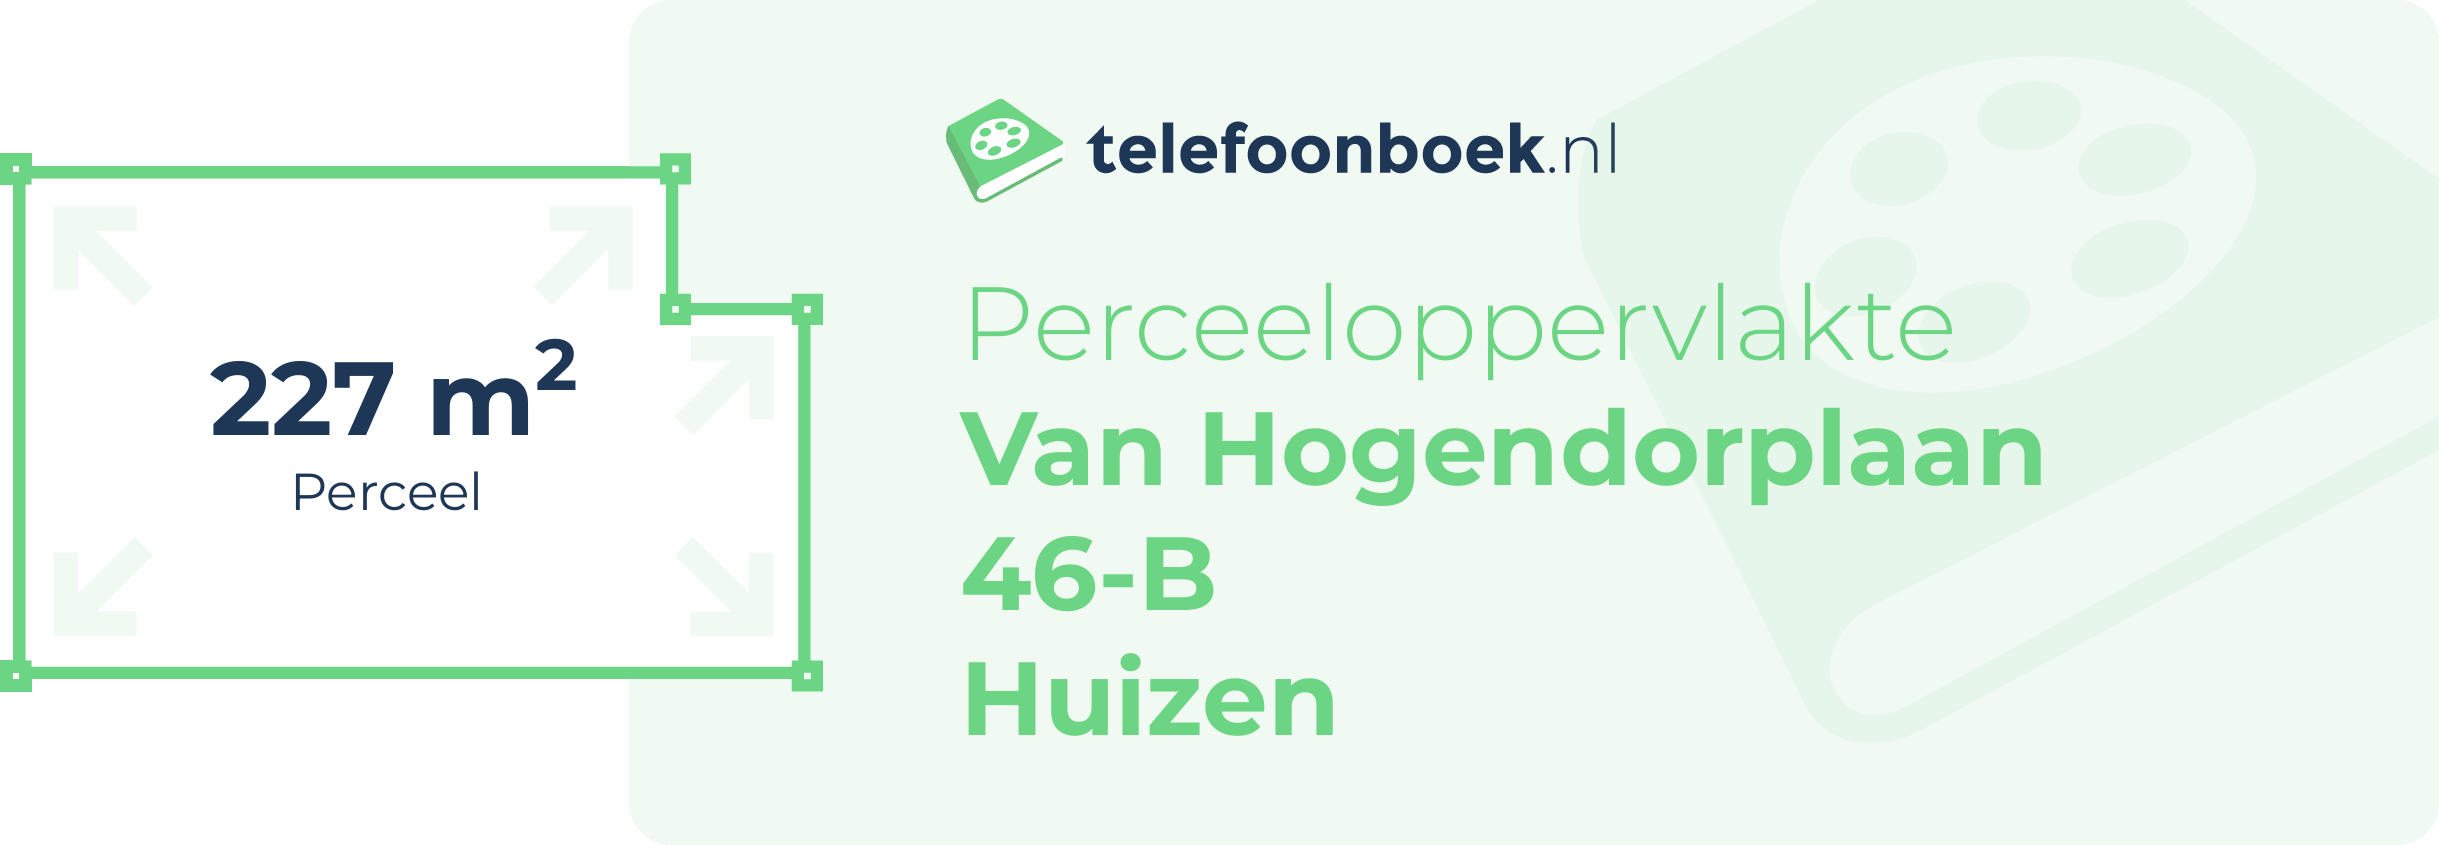 Perceeloppervlakte Van Hogendorplaan 46-B Huizen